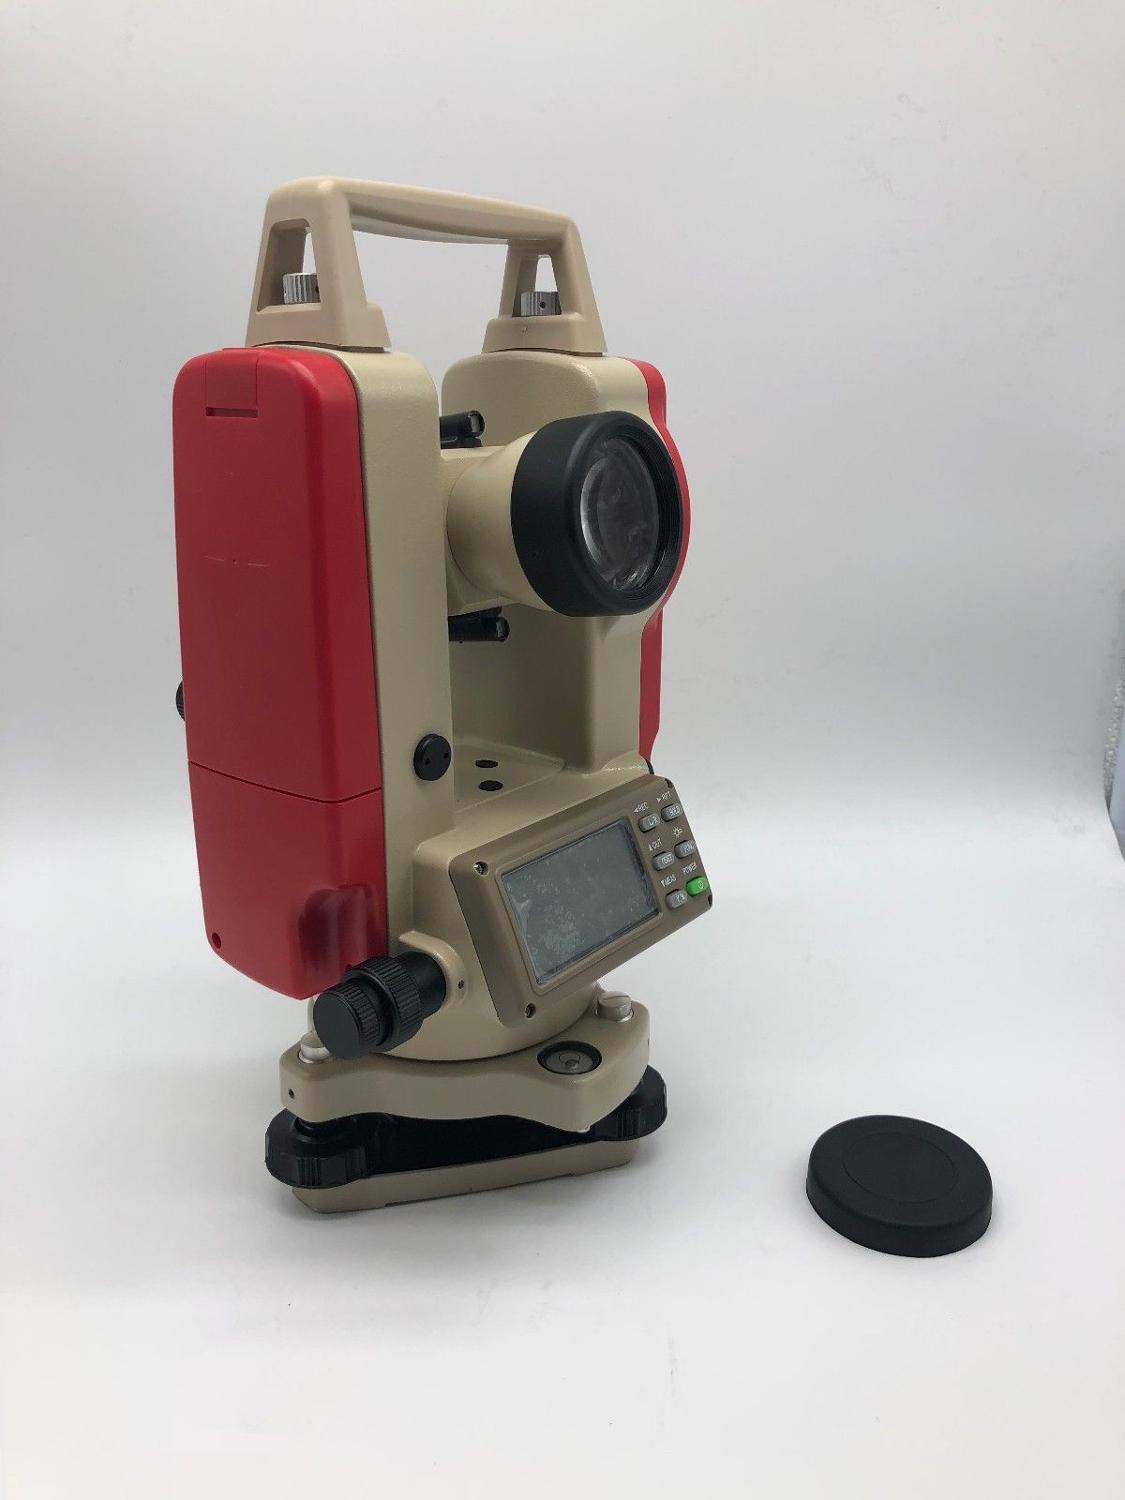 NEW Ko lida DT02 Theodolite surveying instrument